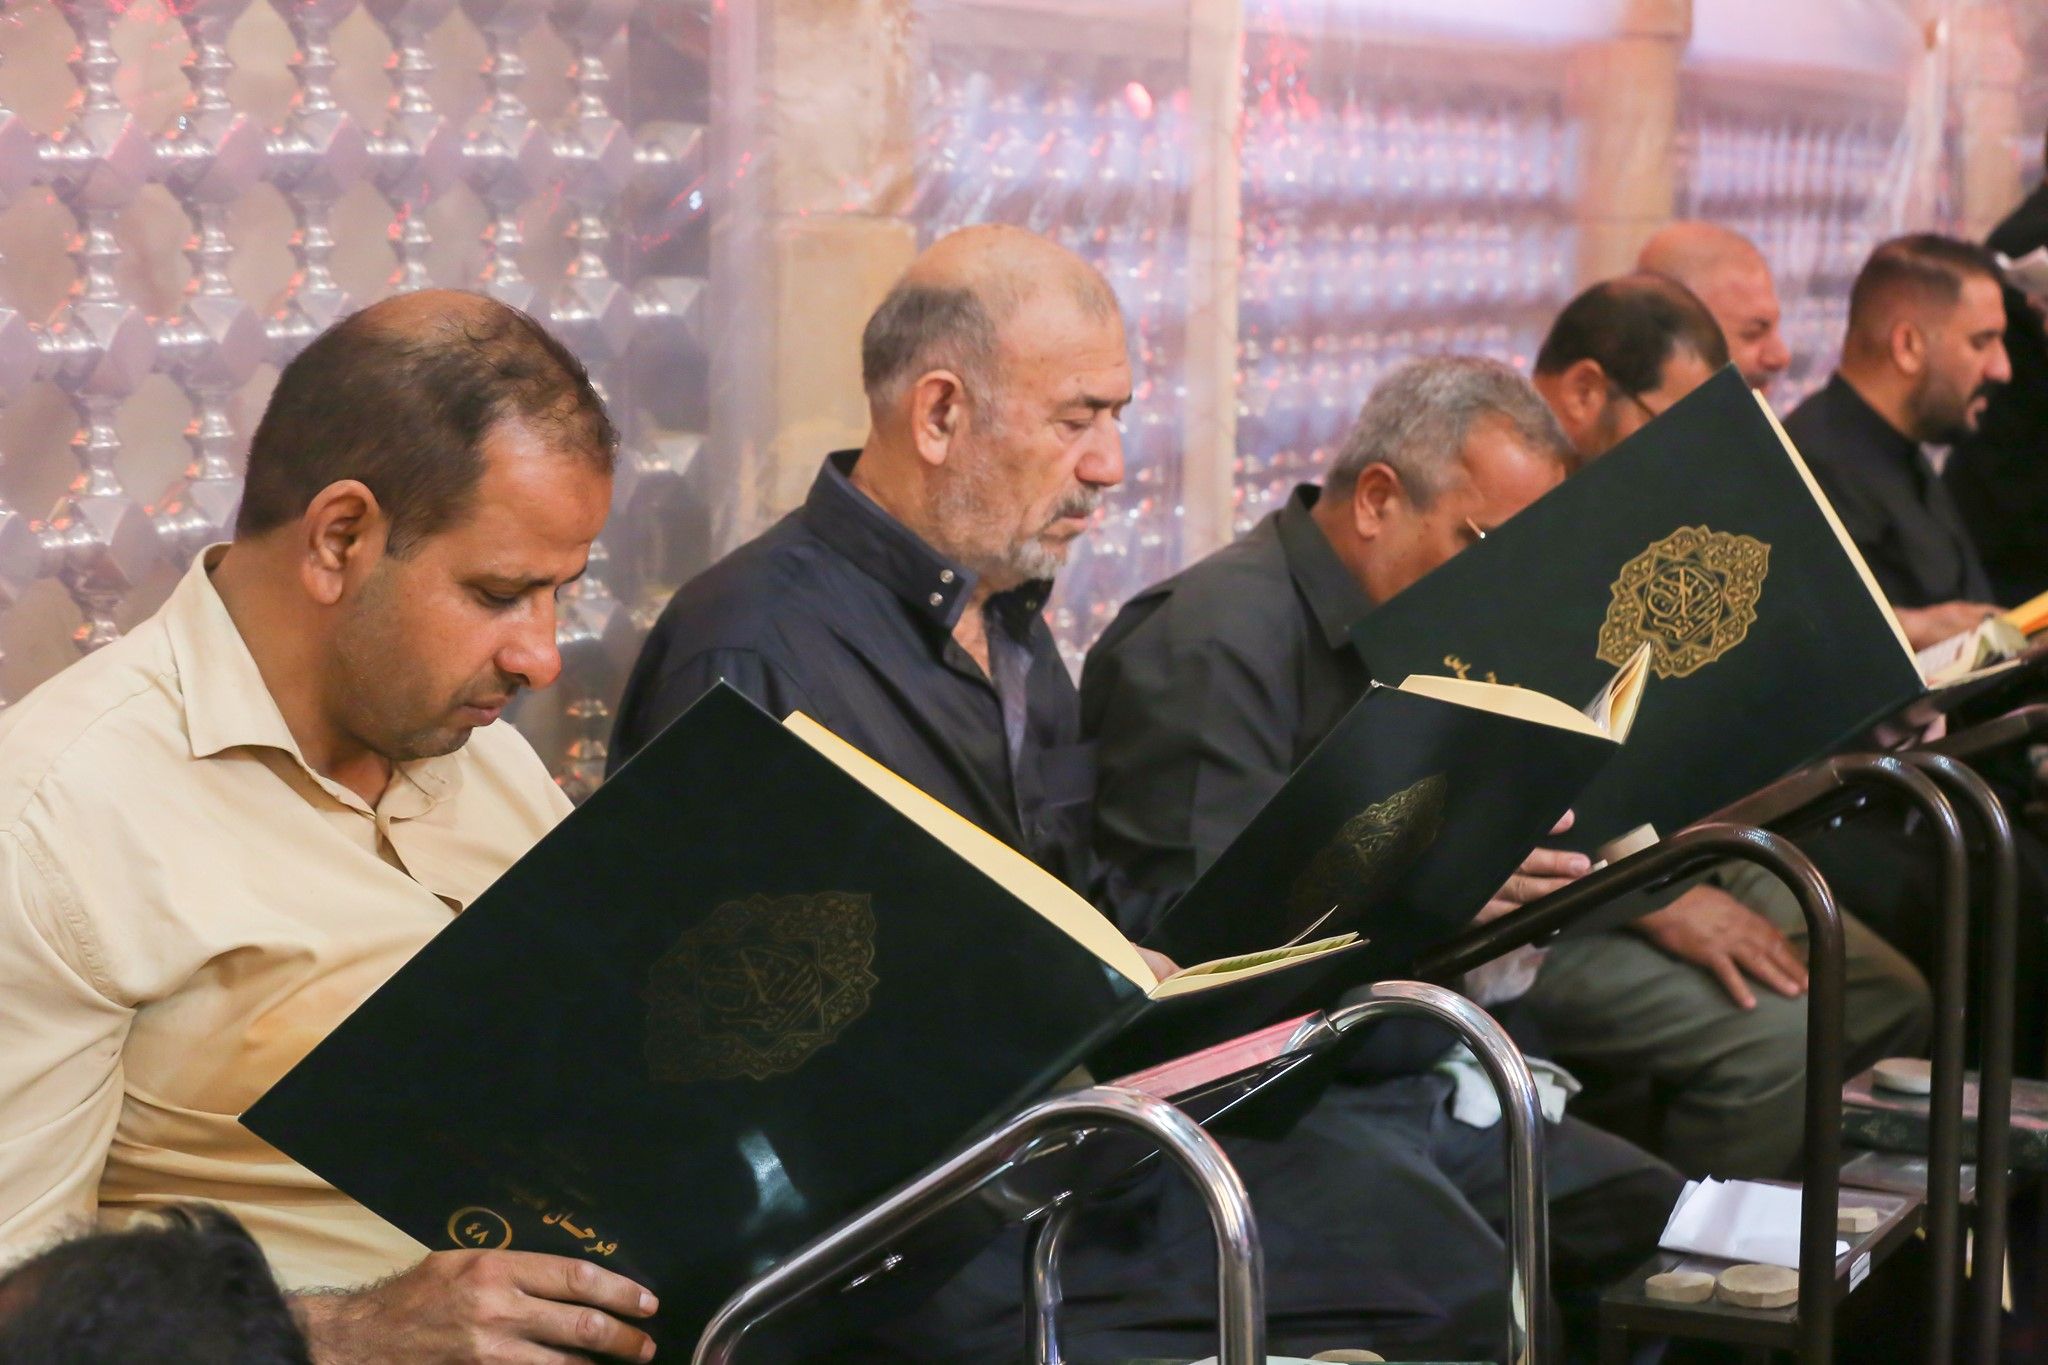 معهد القرآن الكريم يحي ليلة العاشر من المحرم بالختمة القرآنية السنوية في الصحن العباسي المطهر